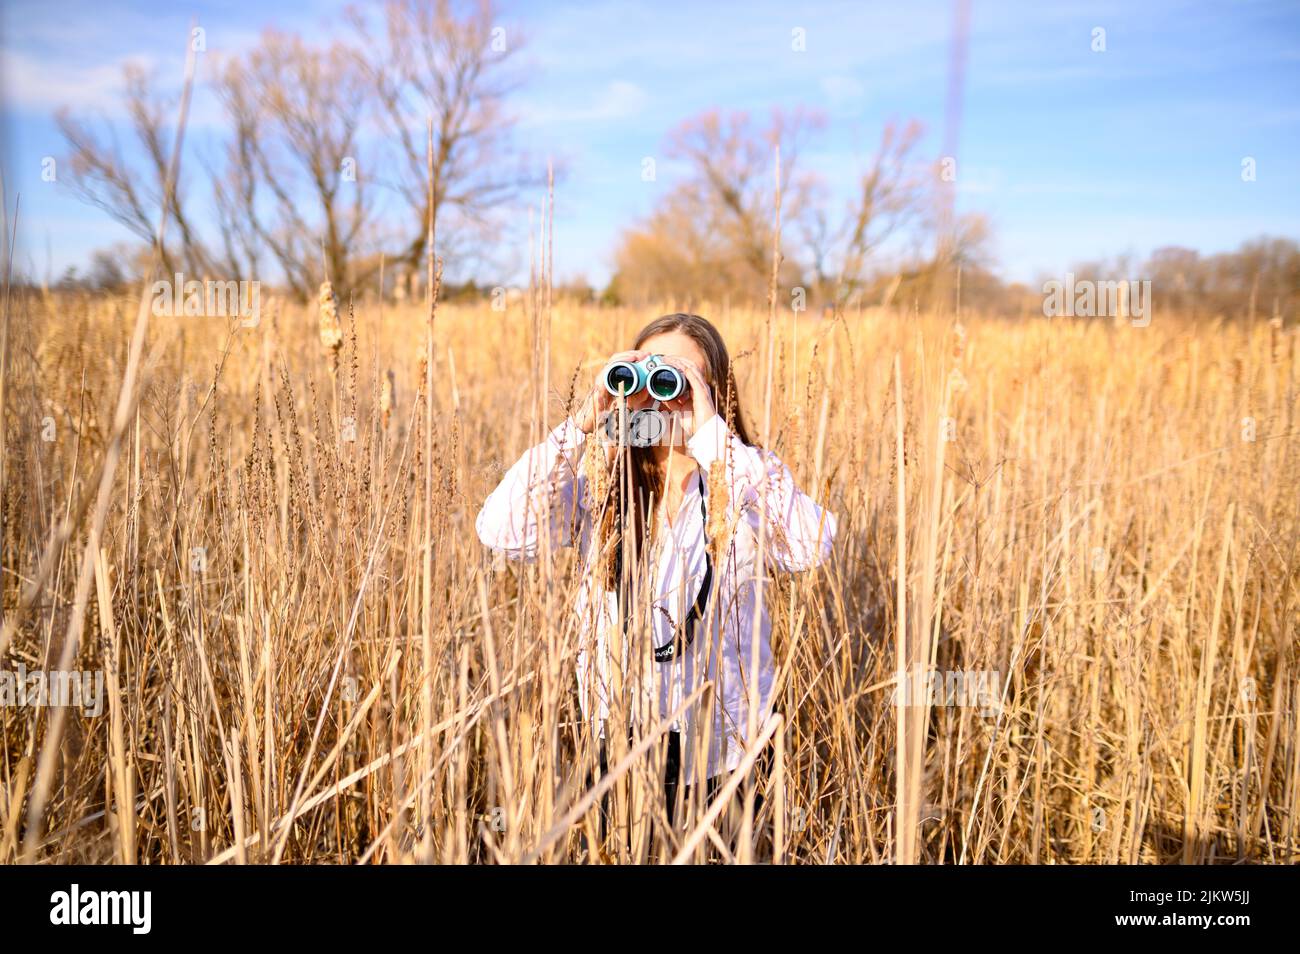 Profil einer Frau, die durch ein blaues Fernglas zur Seite schaut und tagsüber in einem Feld von Katzenschwänzen in einem Sumpfgebiet steht. Stockfoto